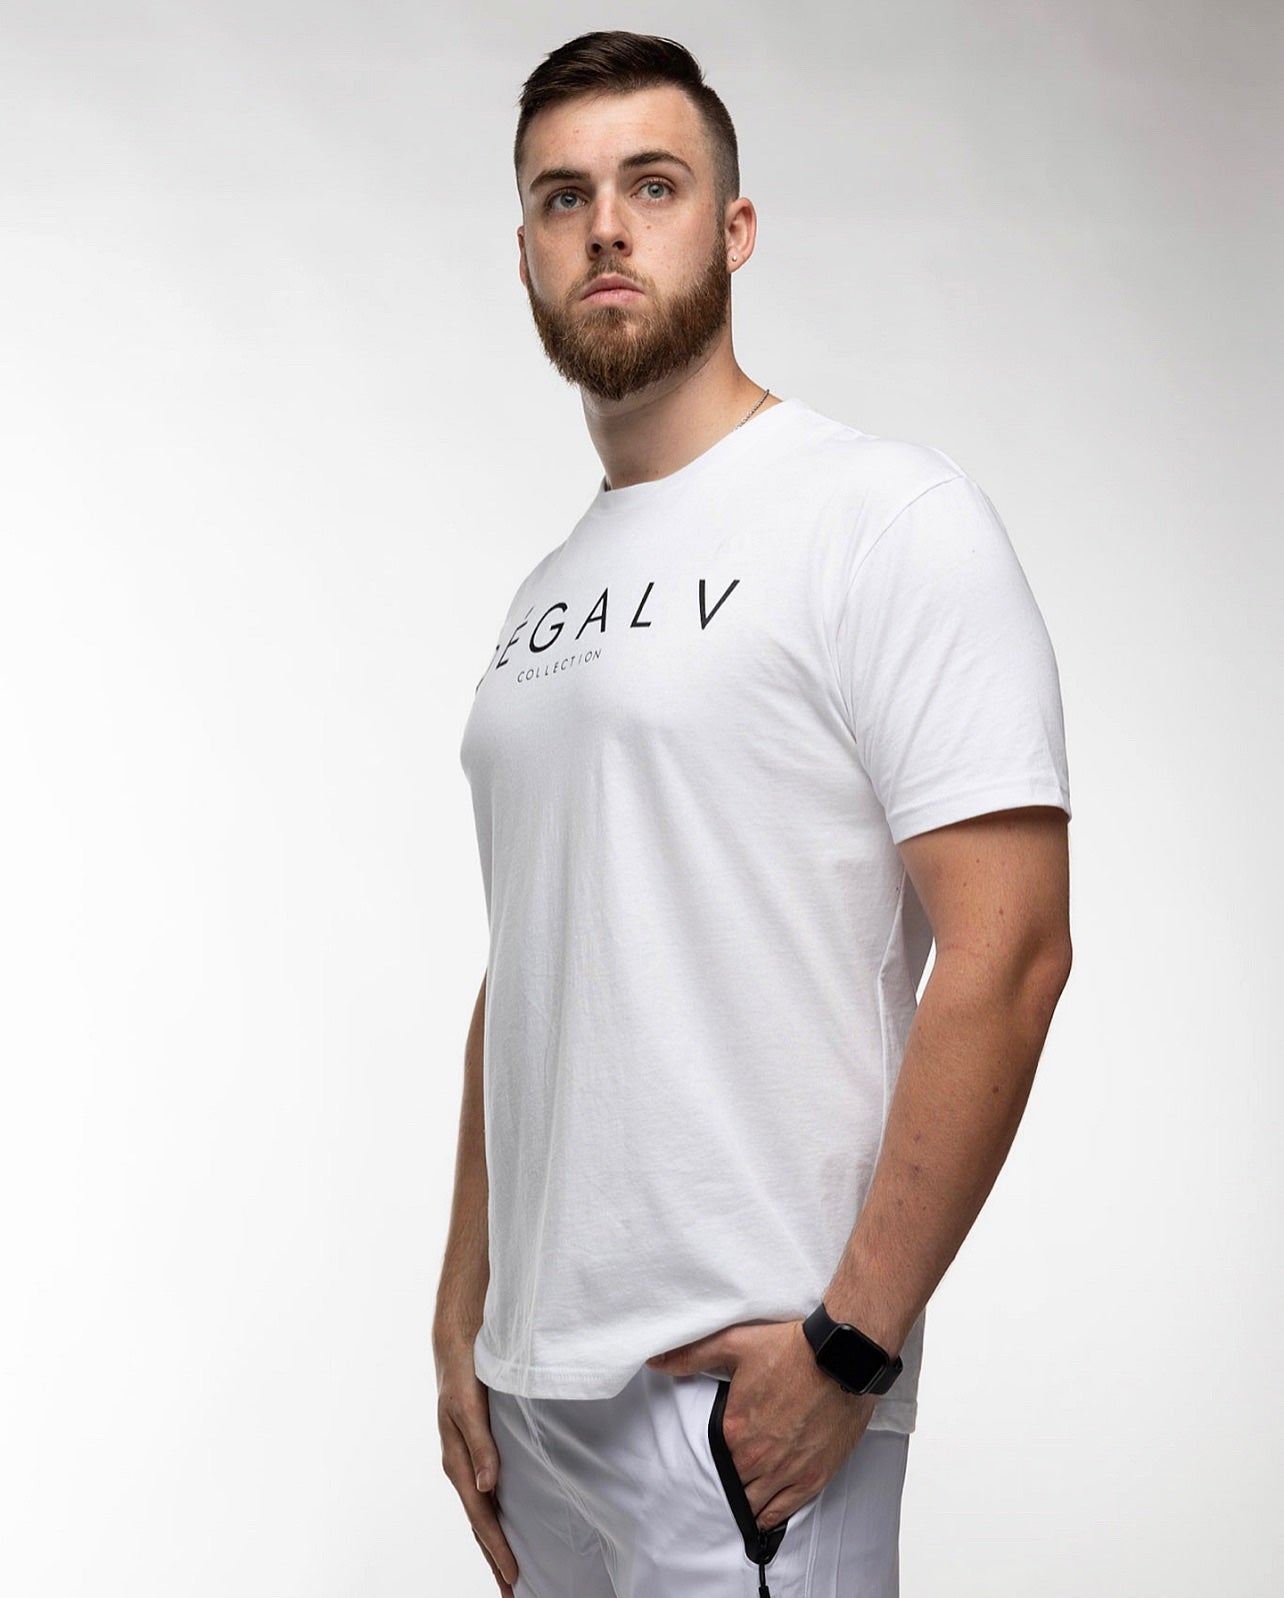 DÈGALV Collection T-Shirt